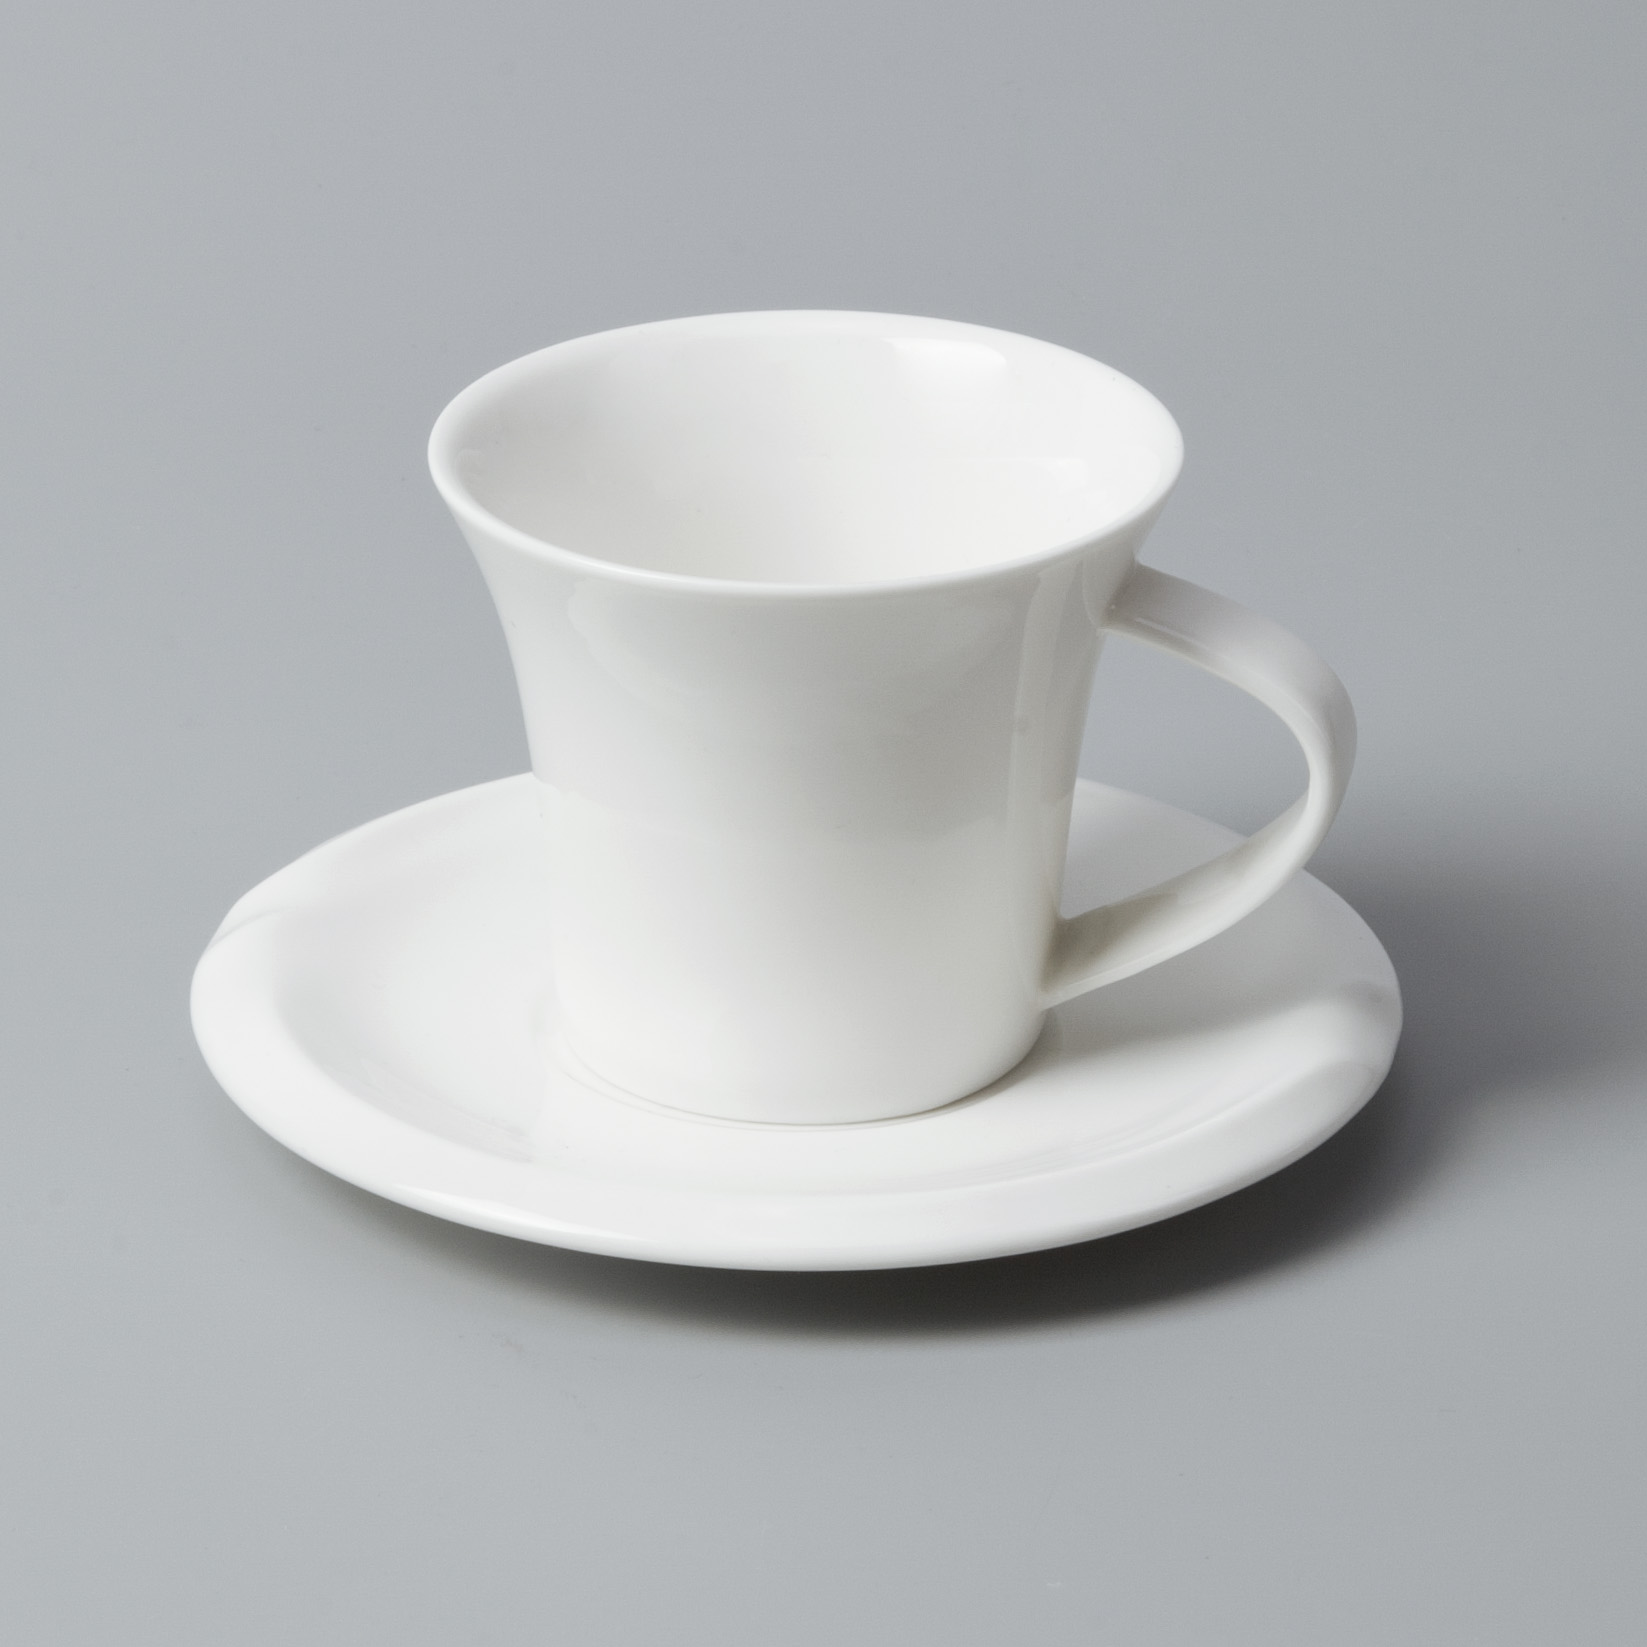 sample fine ceramic dinnerware stock for dinning room Two Eight-7